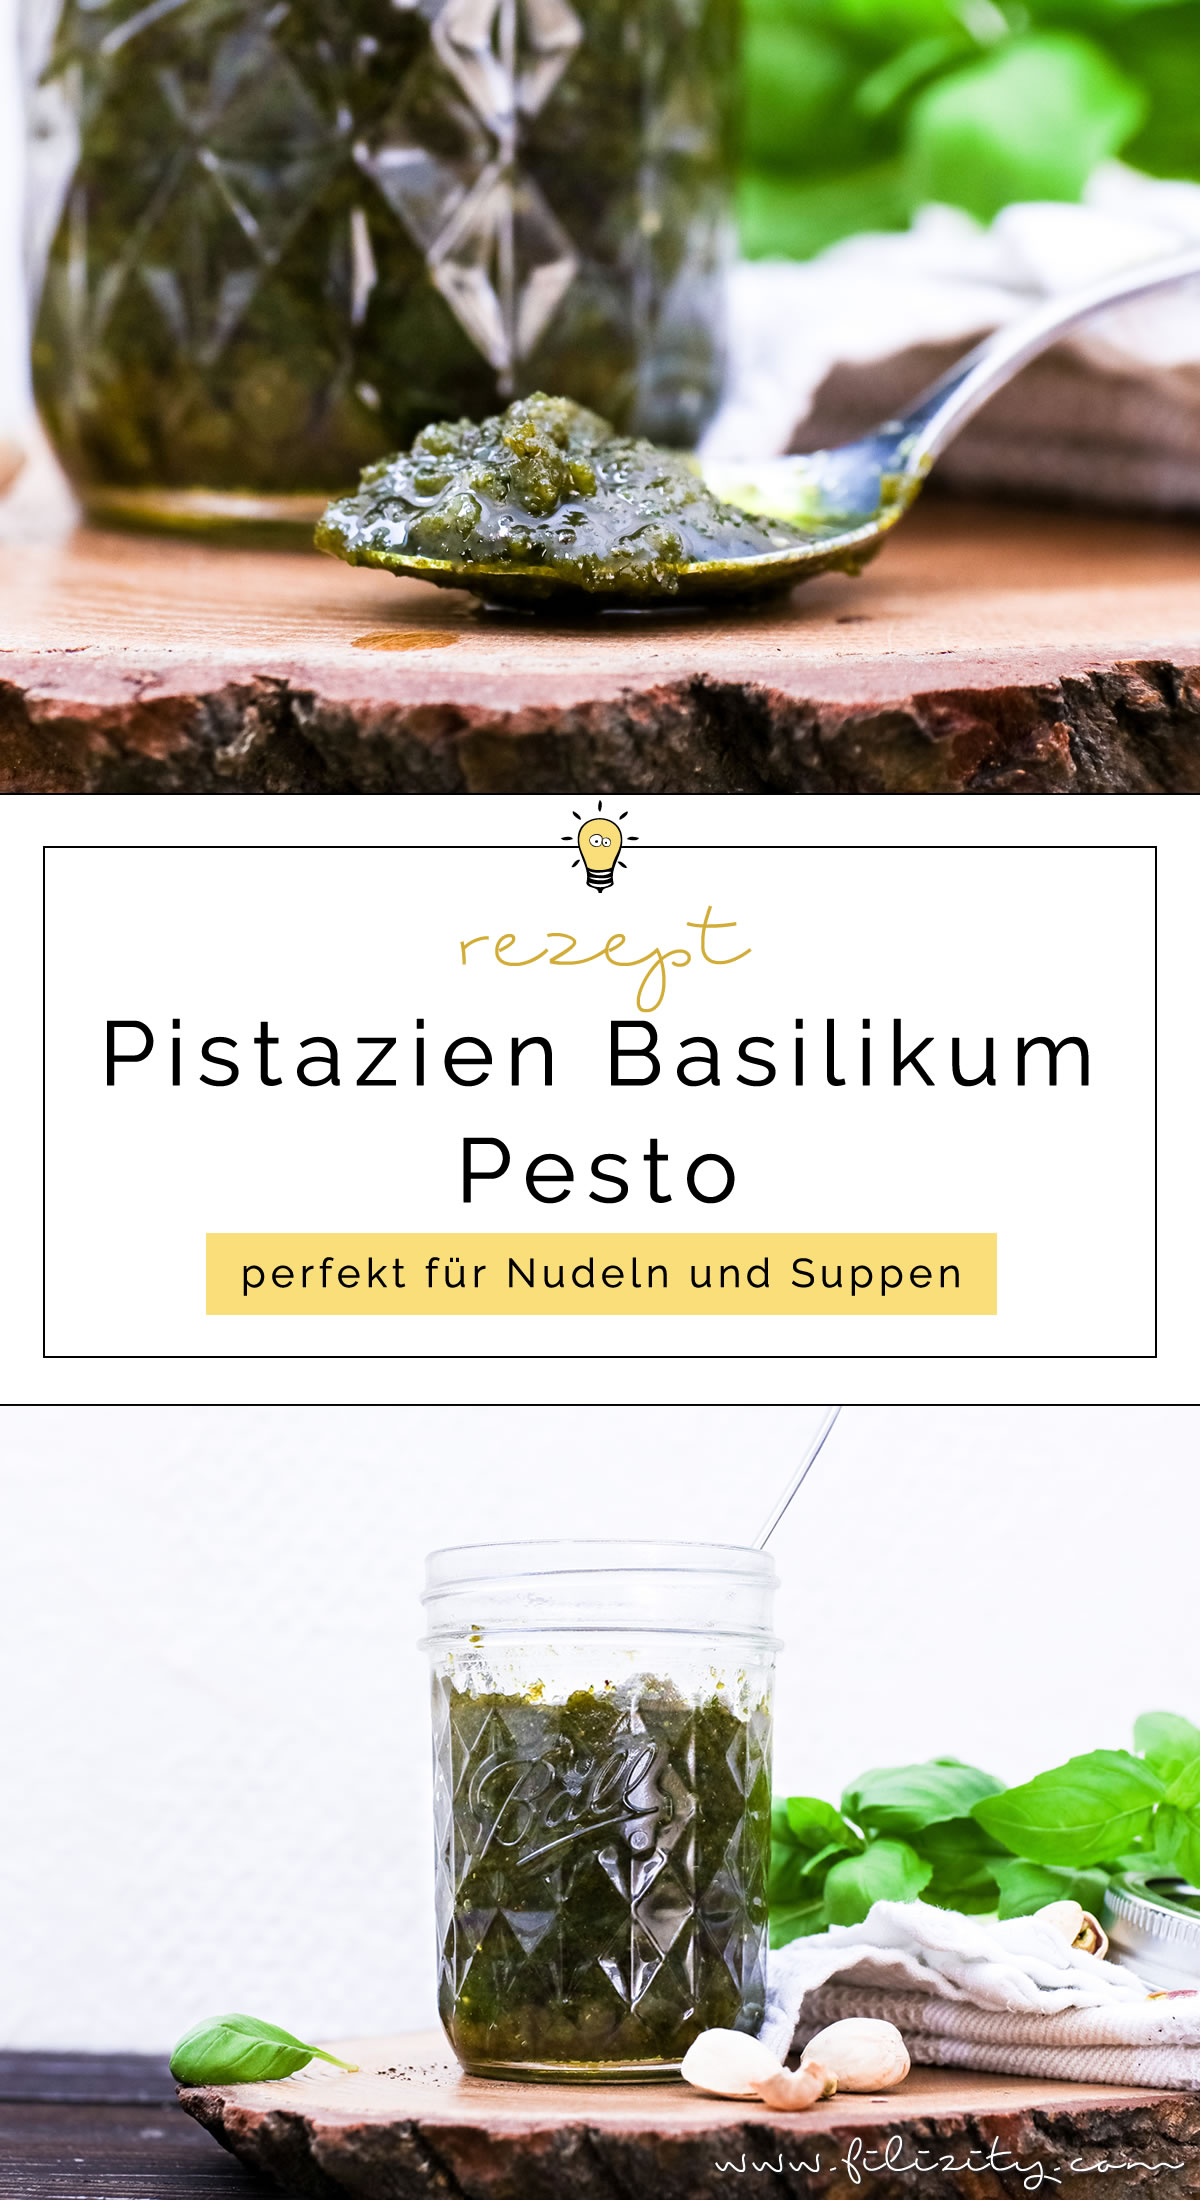 Himmlisches Pesto Rezept: Pistazien-Basilikum-Pesto selber machen | Filizity.com | Food-Blog aus dem Rheinland